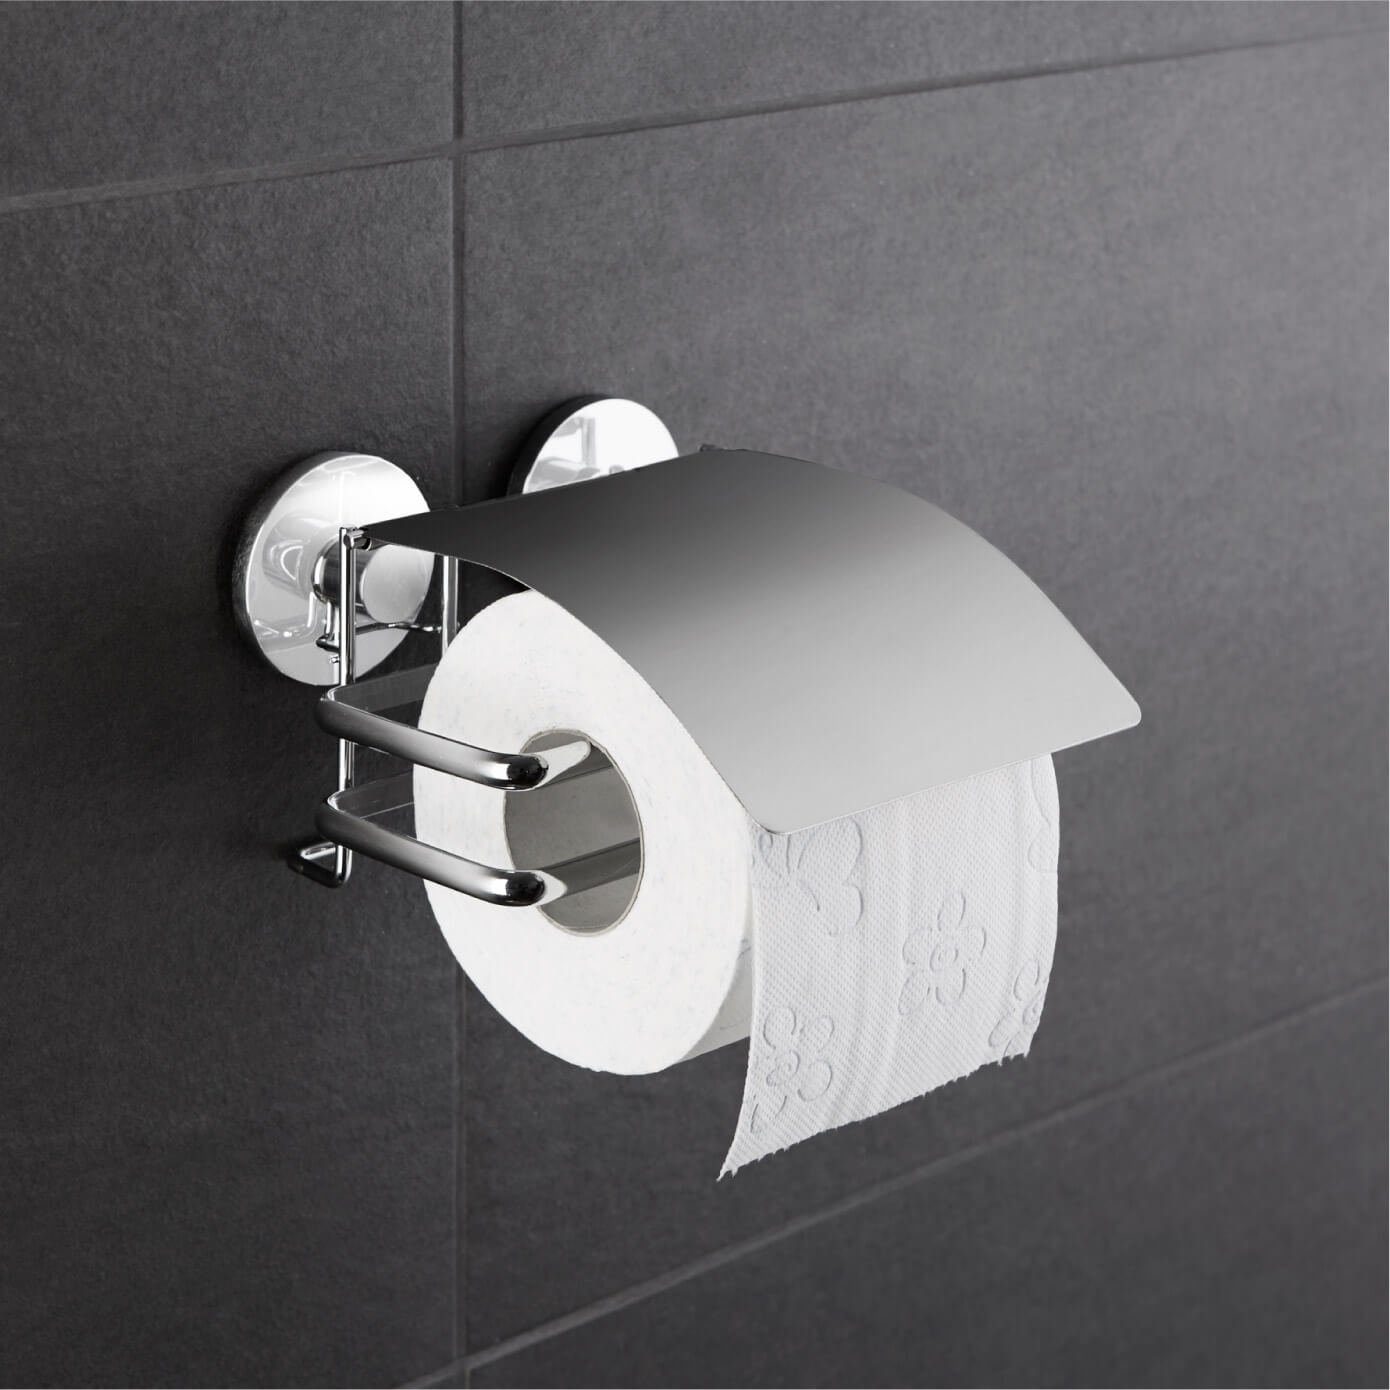 WENKO Toilettenpapierhalter Toiletten Wand Bohren Halter Papier Deckel Rollen ohne Edelstahl